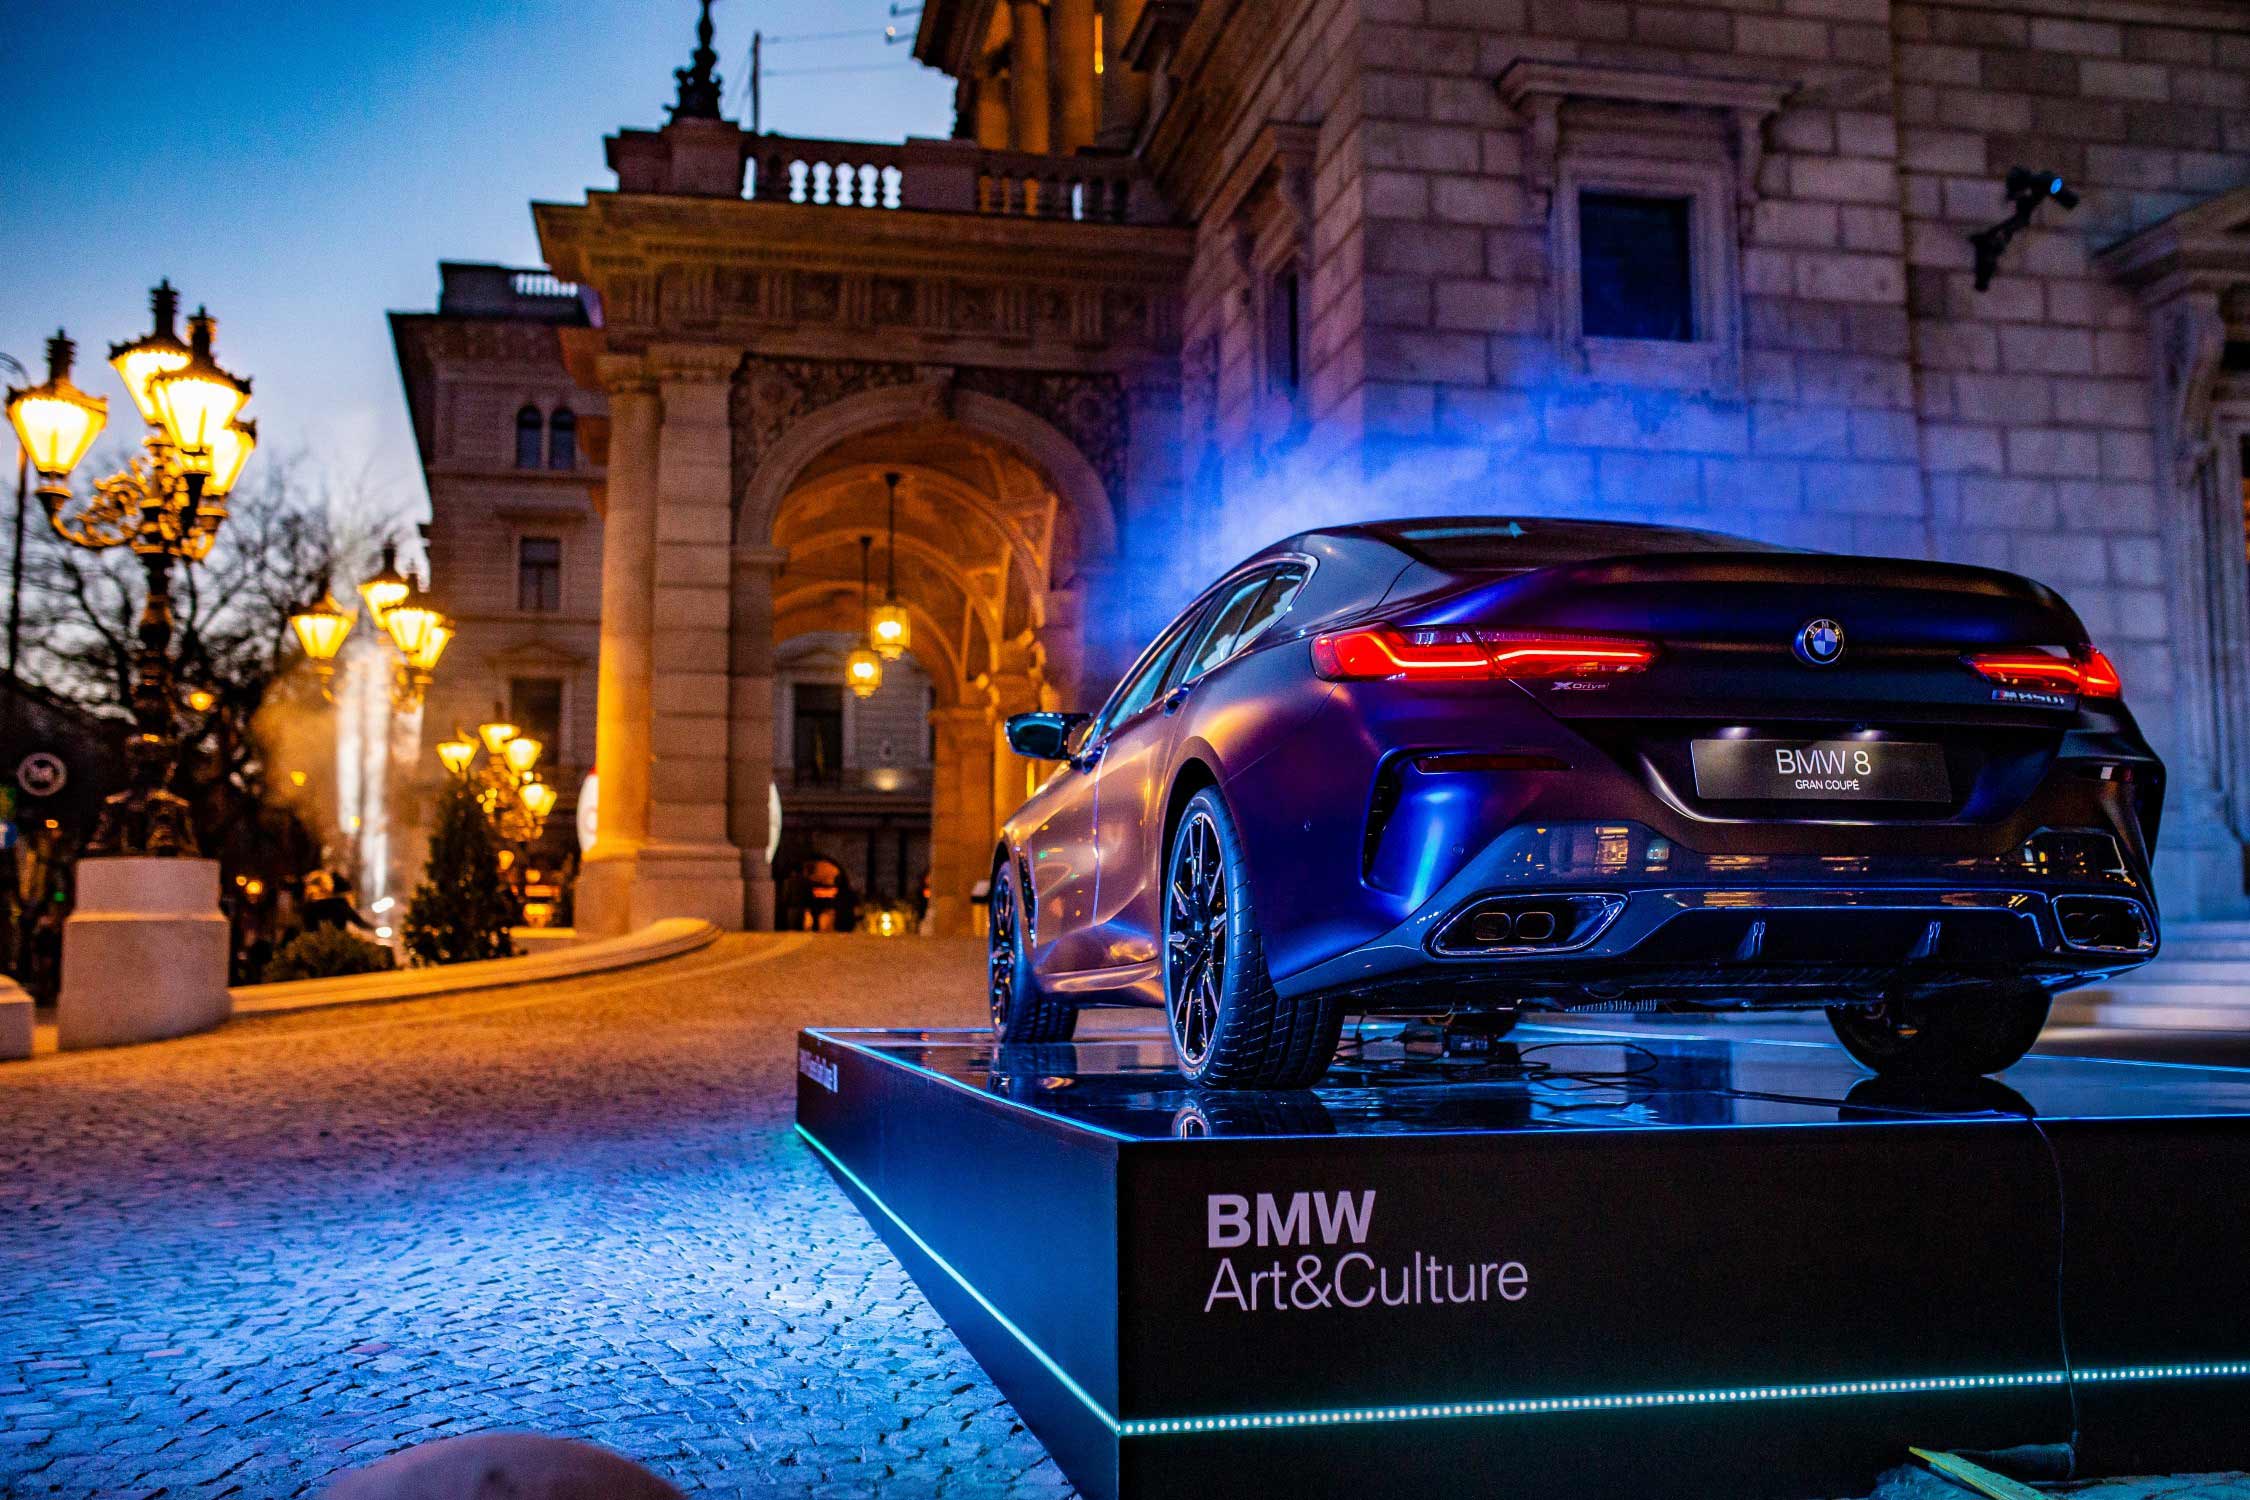 Forrás: BMW Group Magyarország